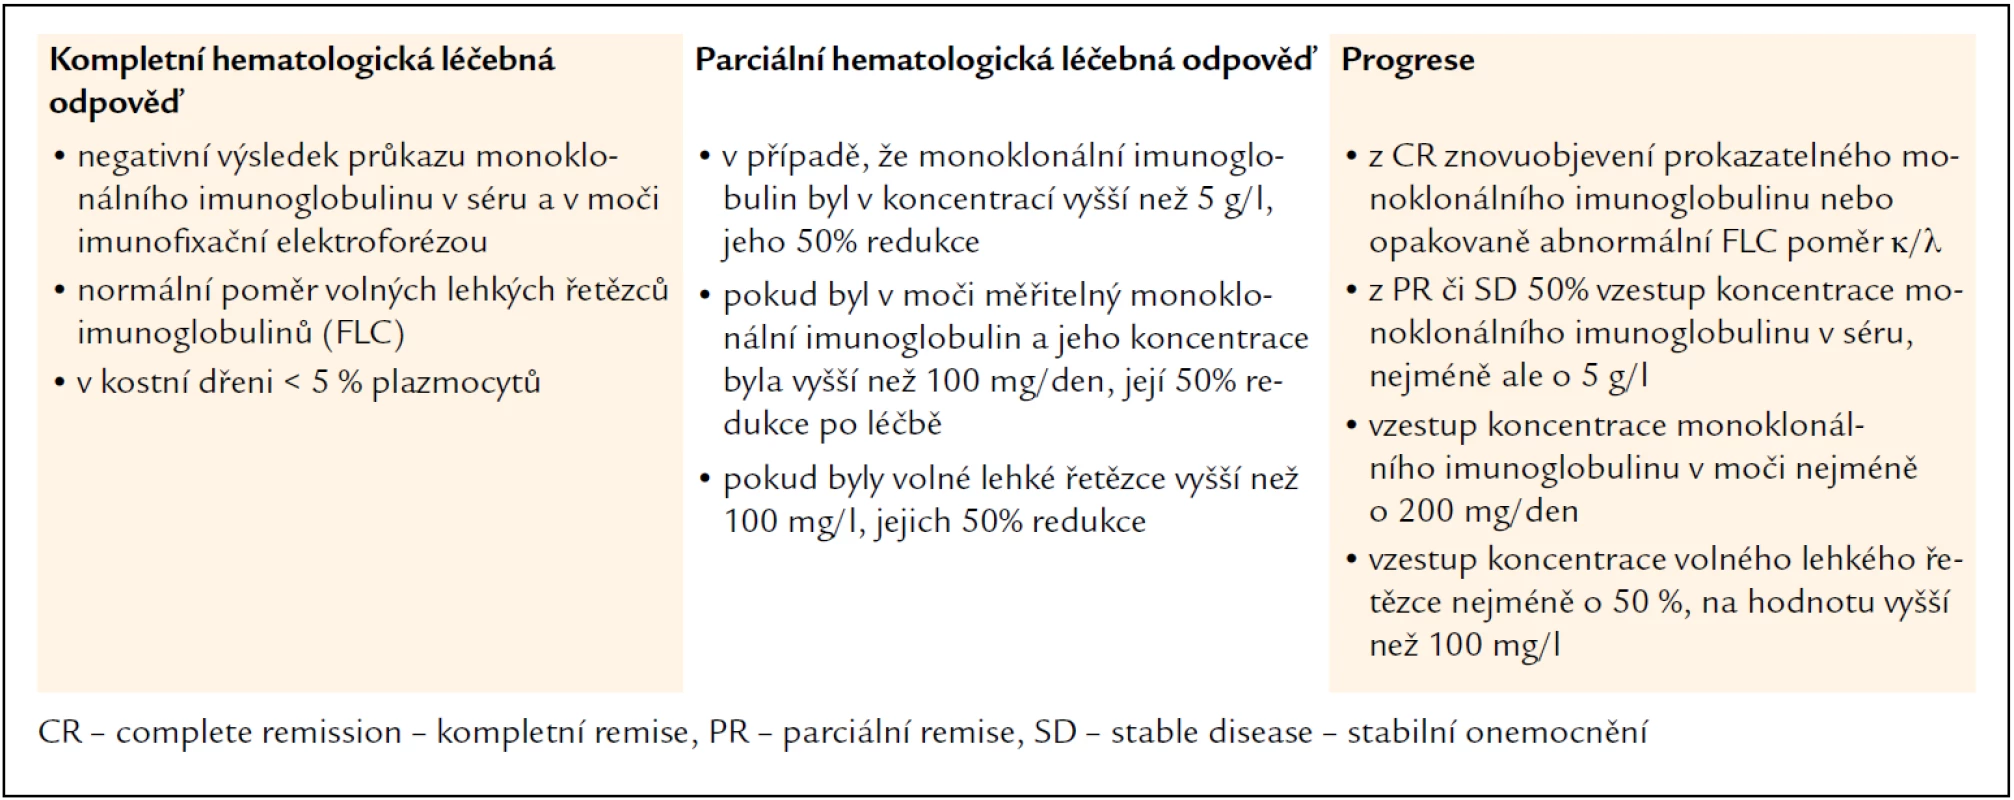 Definice hematologických léčebných odpovědí u pacientů s AL-amyloidózou z roku 2005 [34,35].